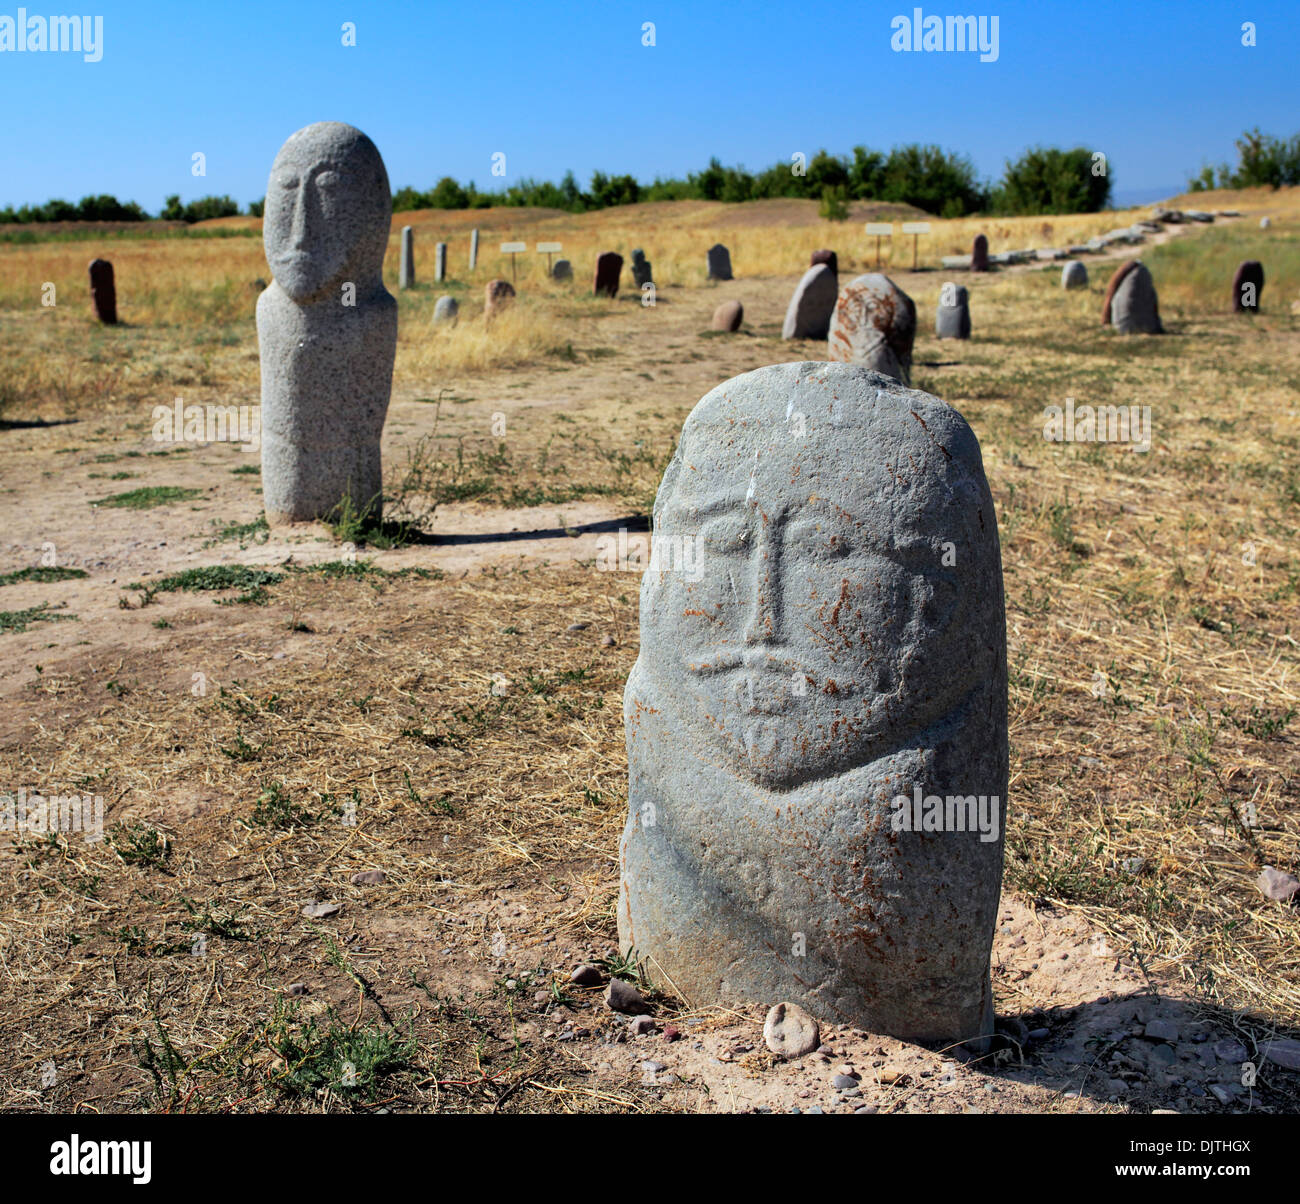 Balbals, d'anciennes sculptures turques (6e-10e siècle), près de la tour Burana, oblast de Chuy, Kirghizistan Banque D'Images